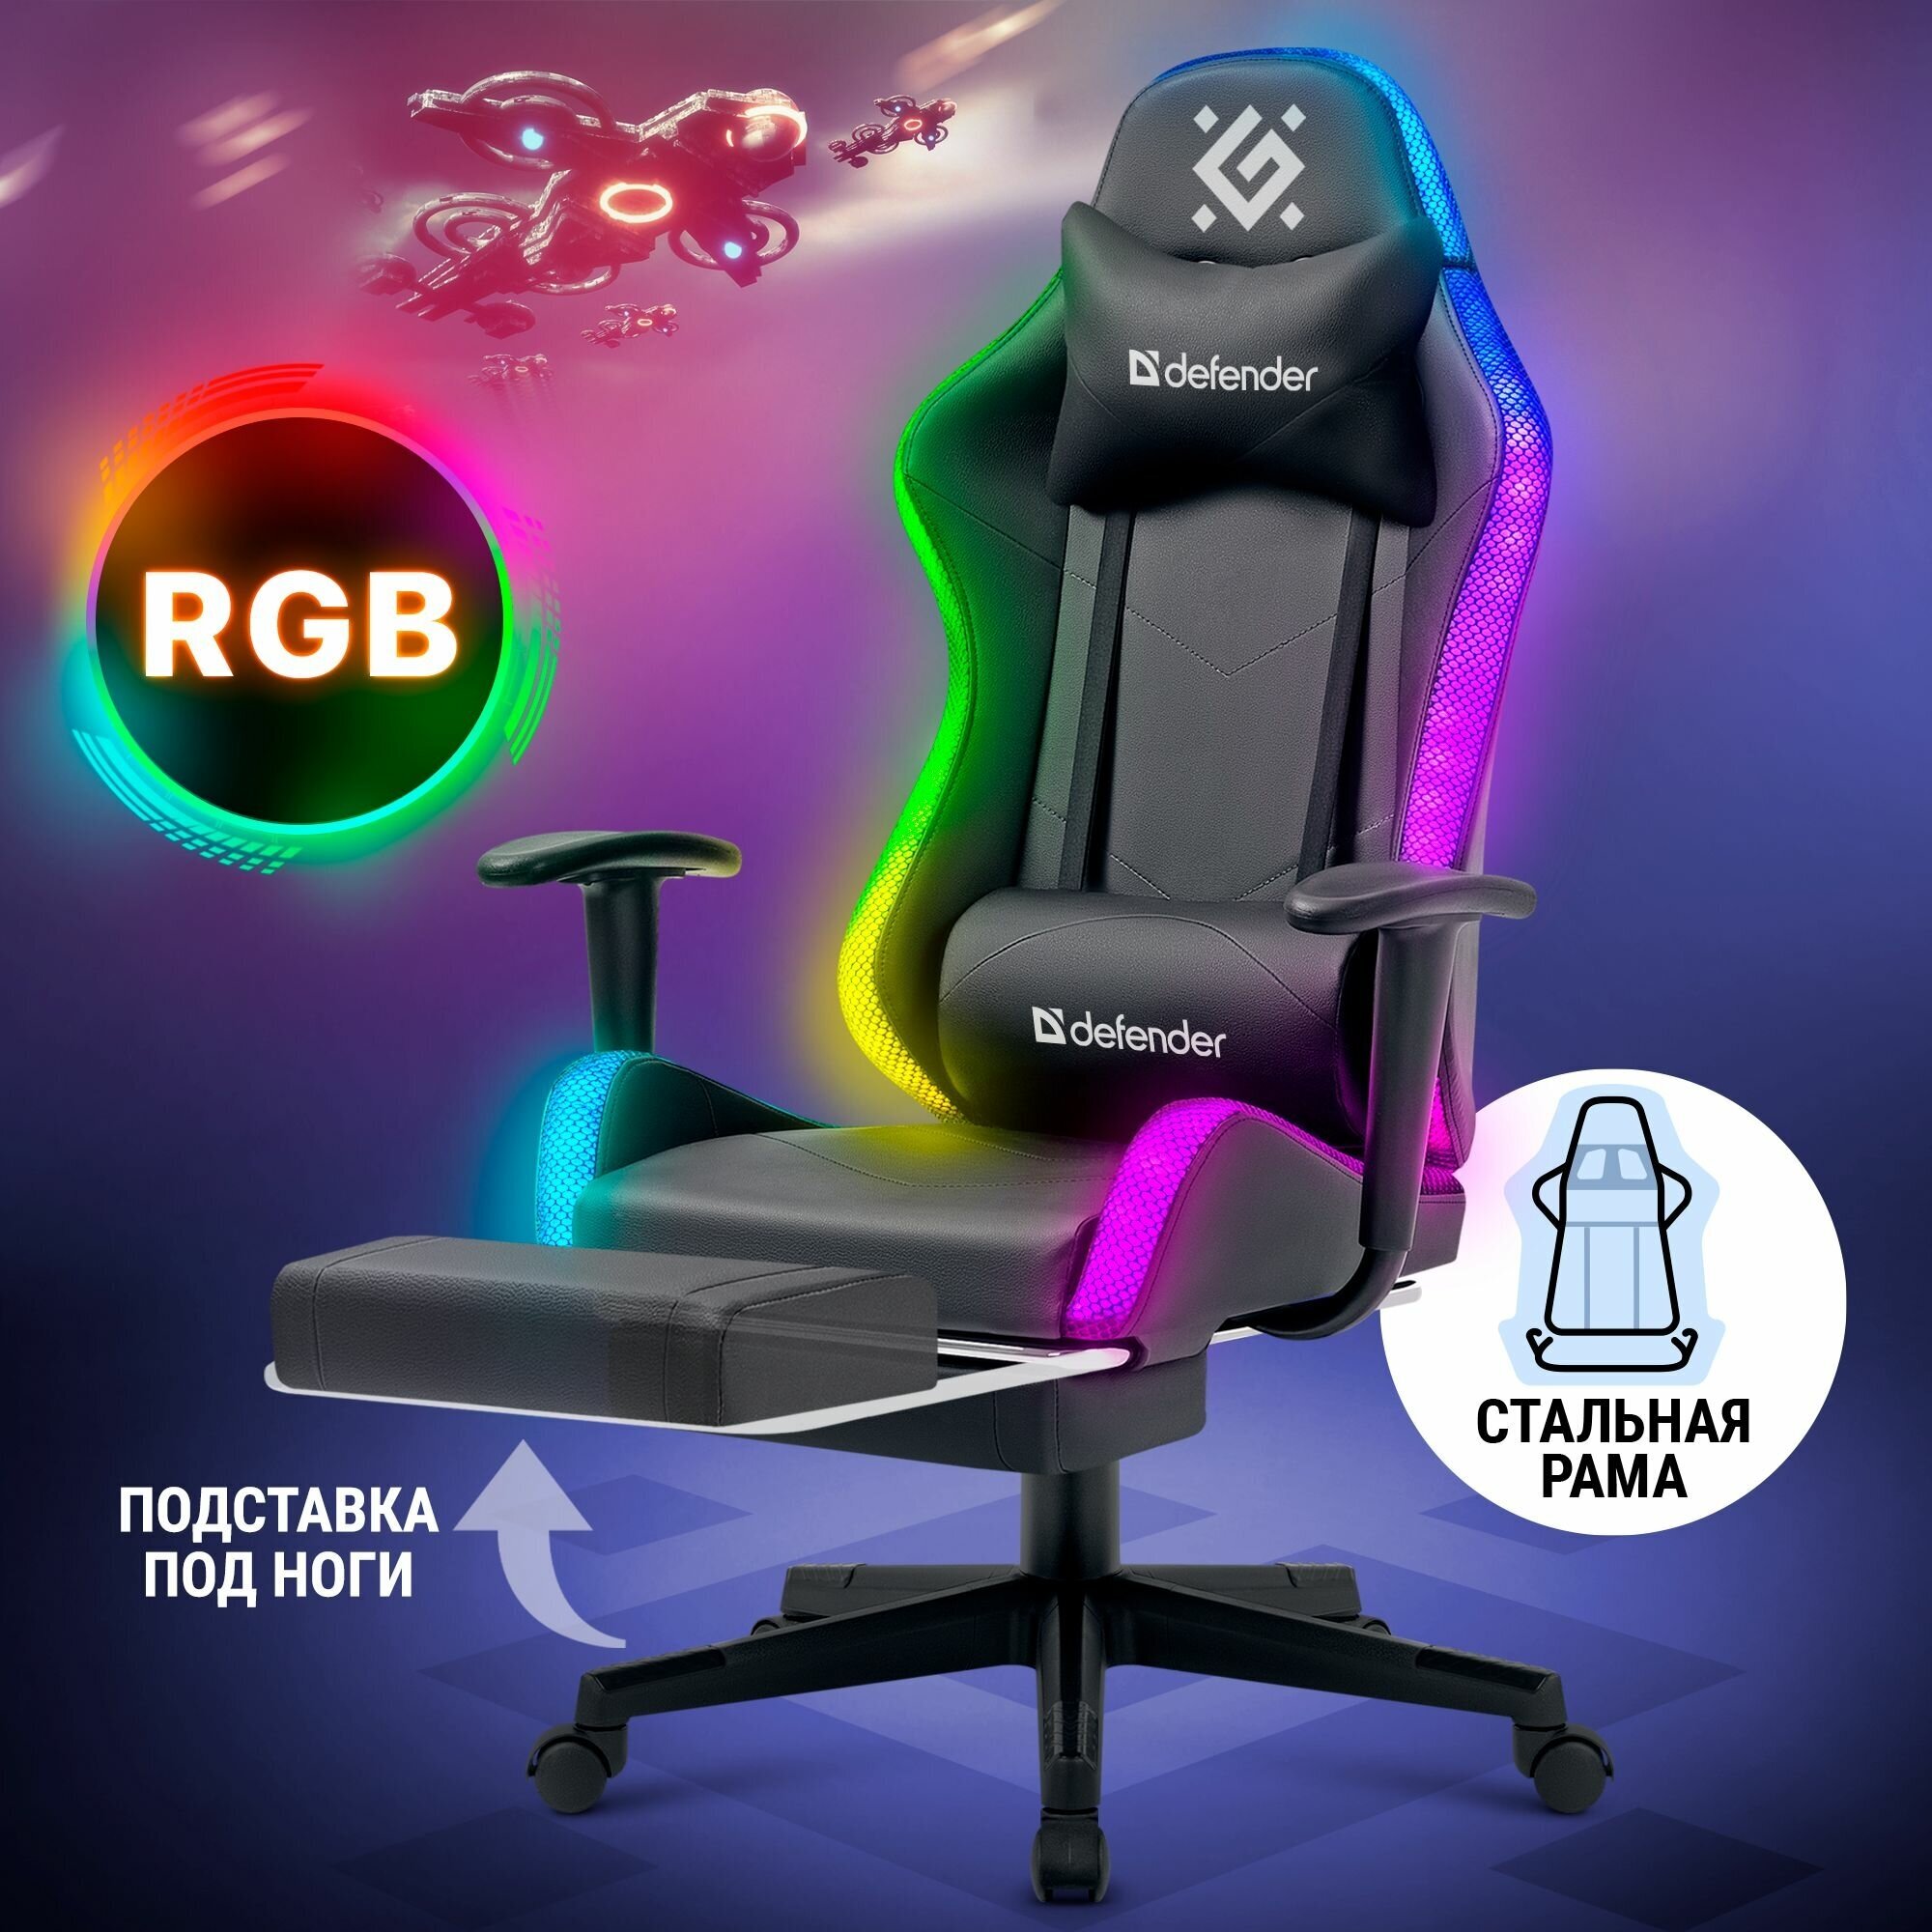 Компьютерное игровое кресло Defender для геймеров и офиса в черном/белом цвете с RGB подсветкой из эко-кожи с регулировкой высоты и спинкой.